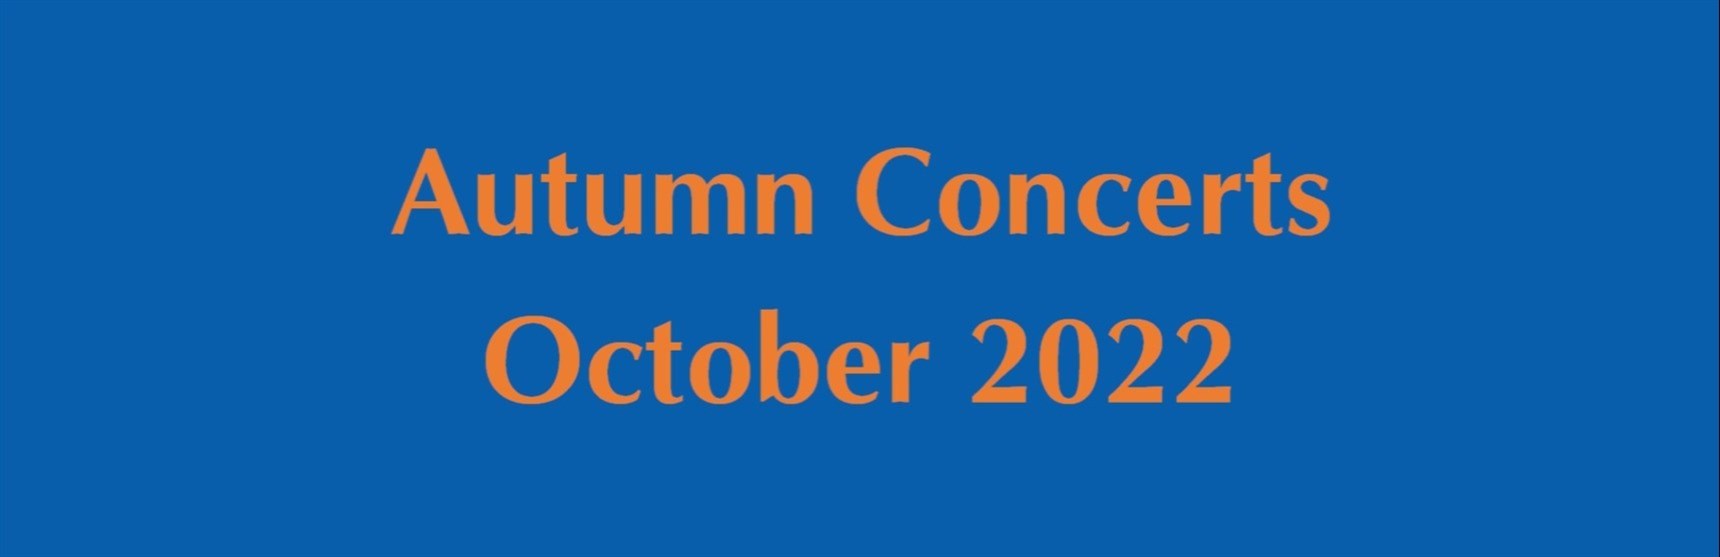 AutumnConcerts-2022